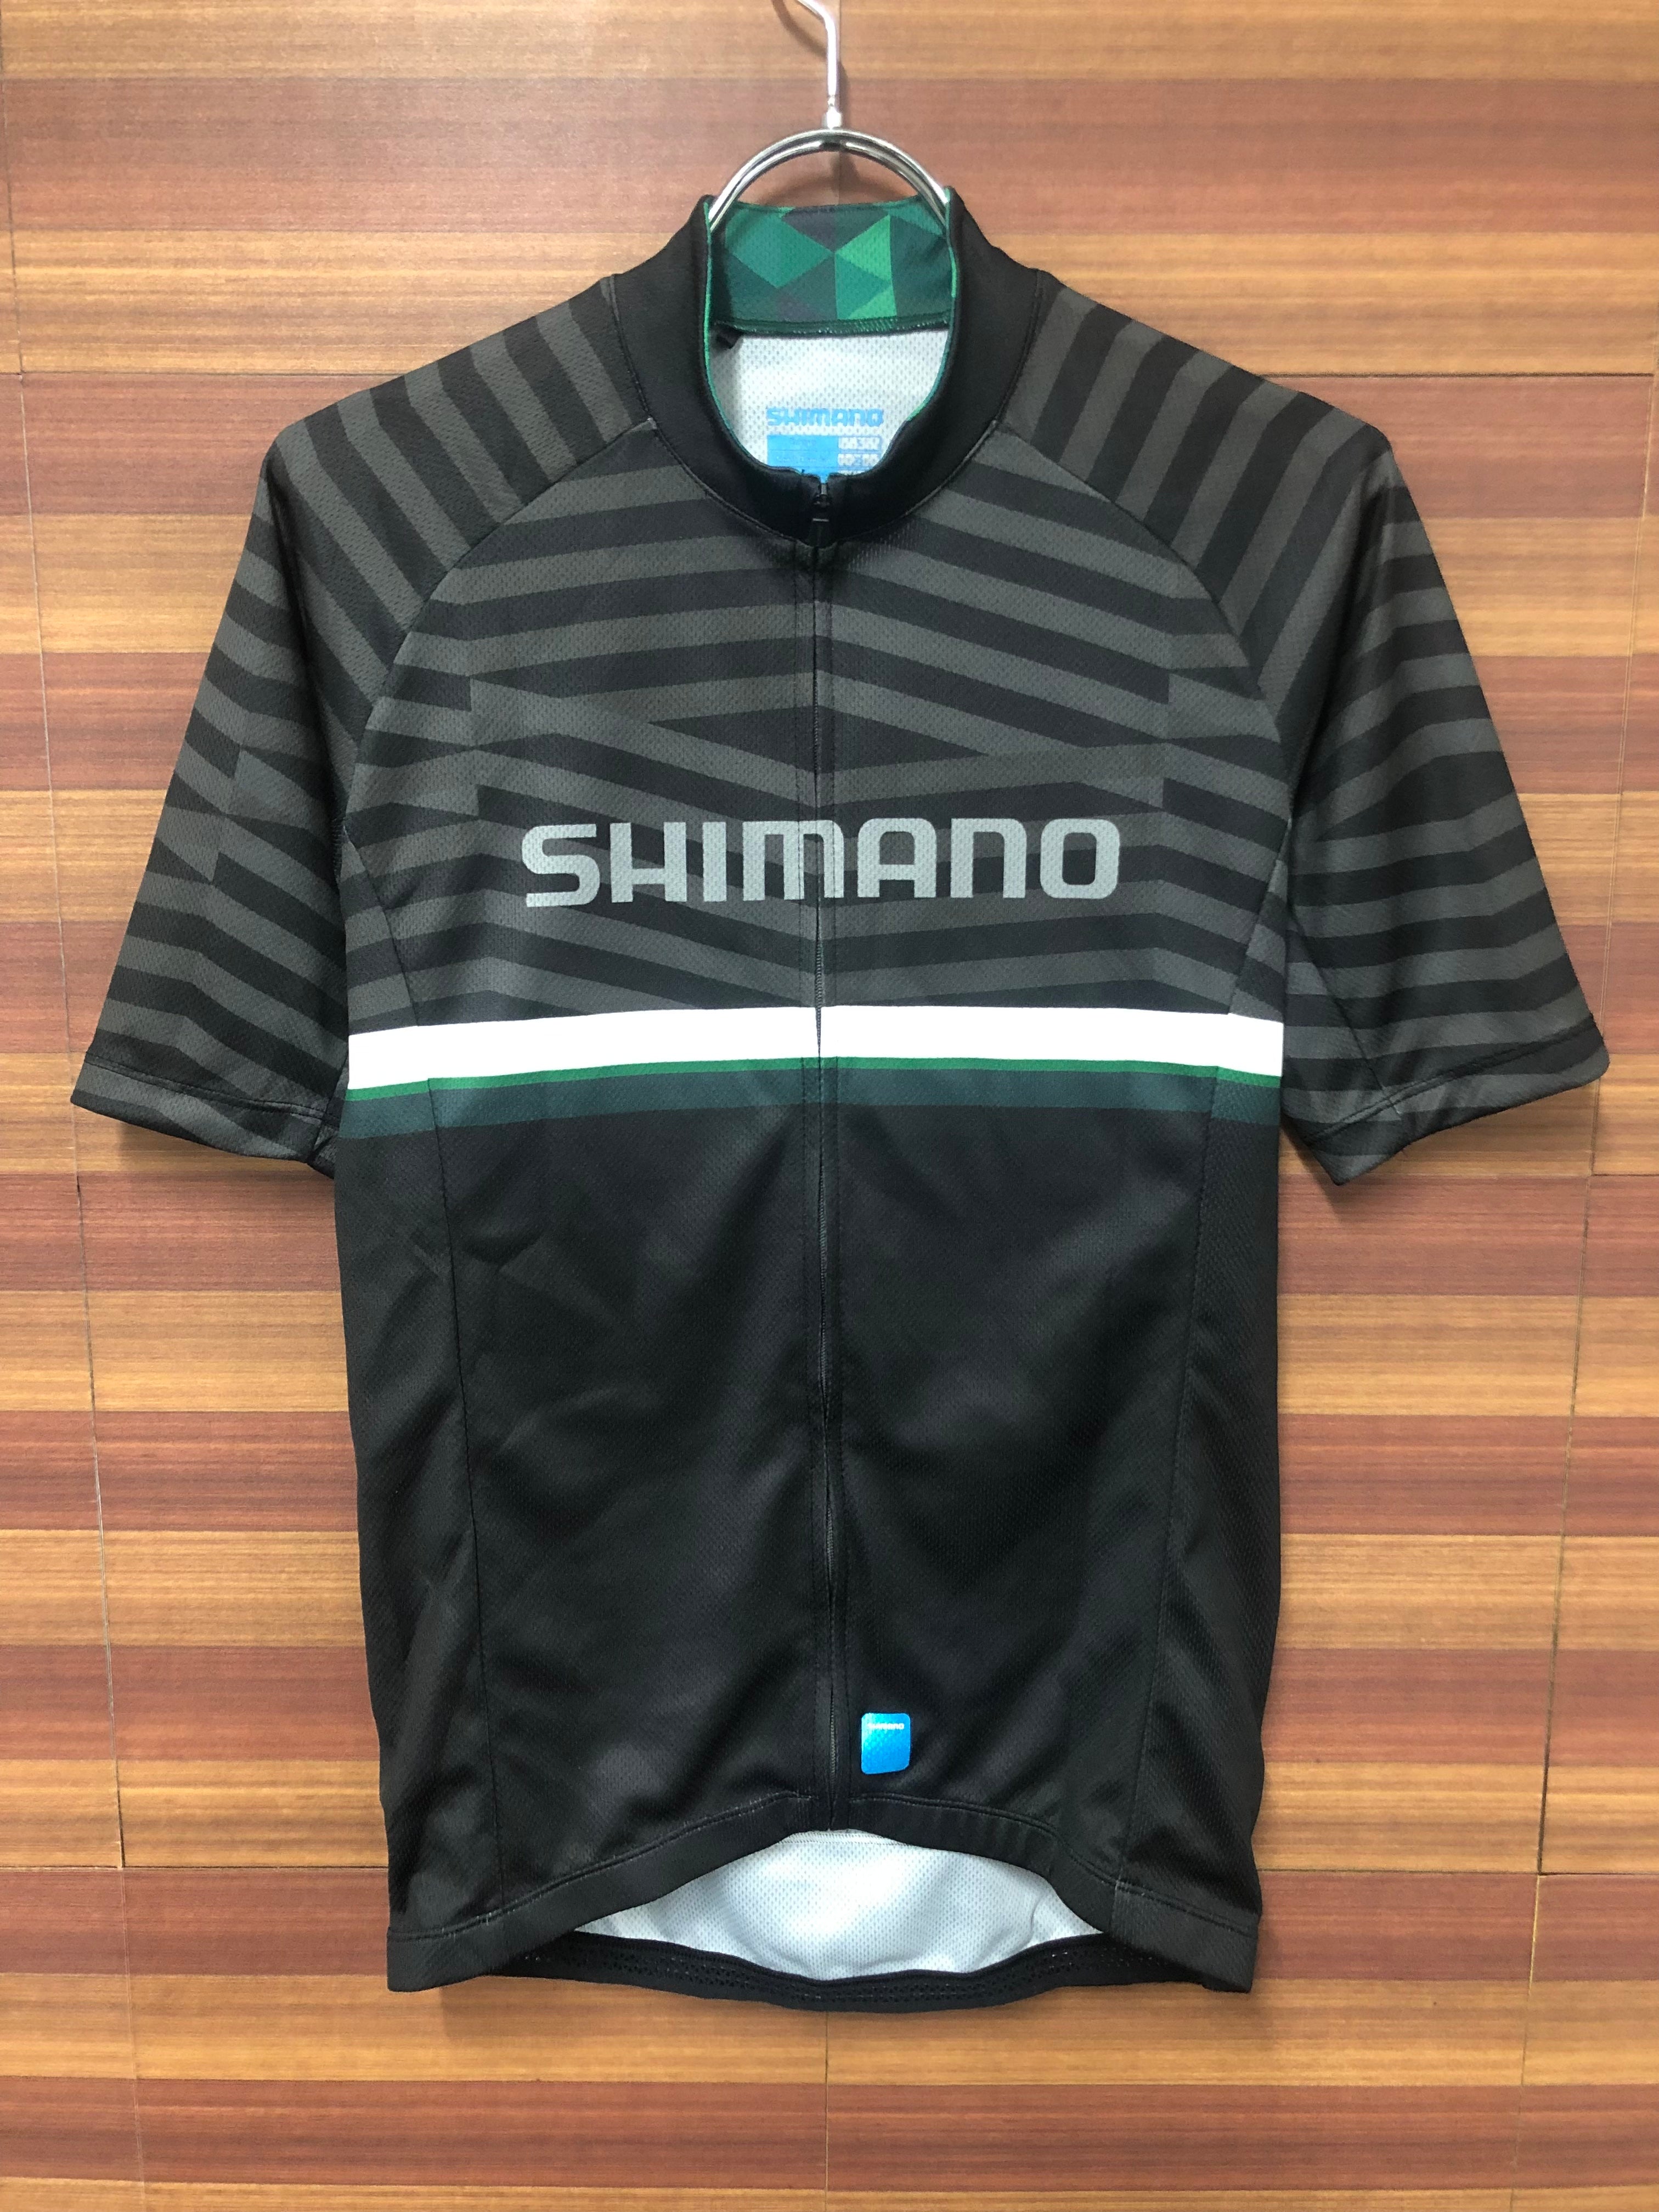 シマノ SHIMANO サイクル ジャージ サイズ M - ウェア